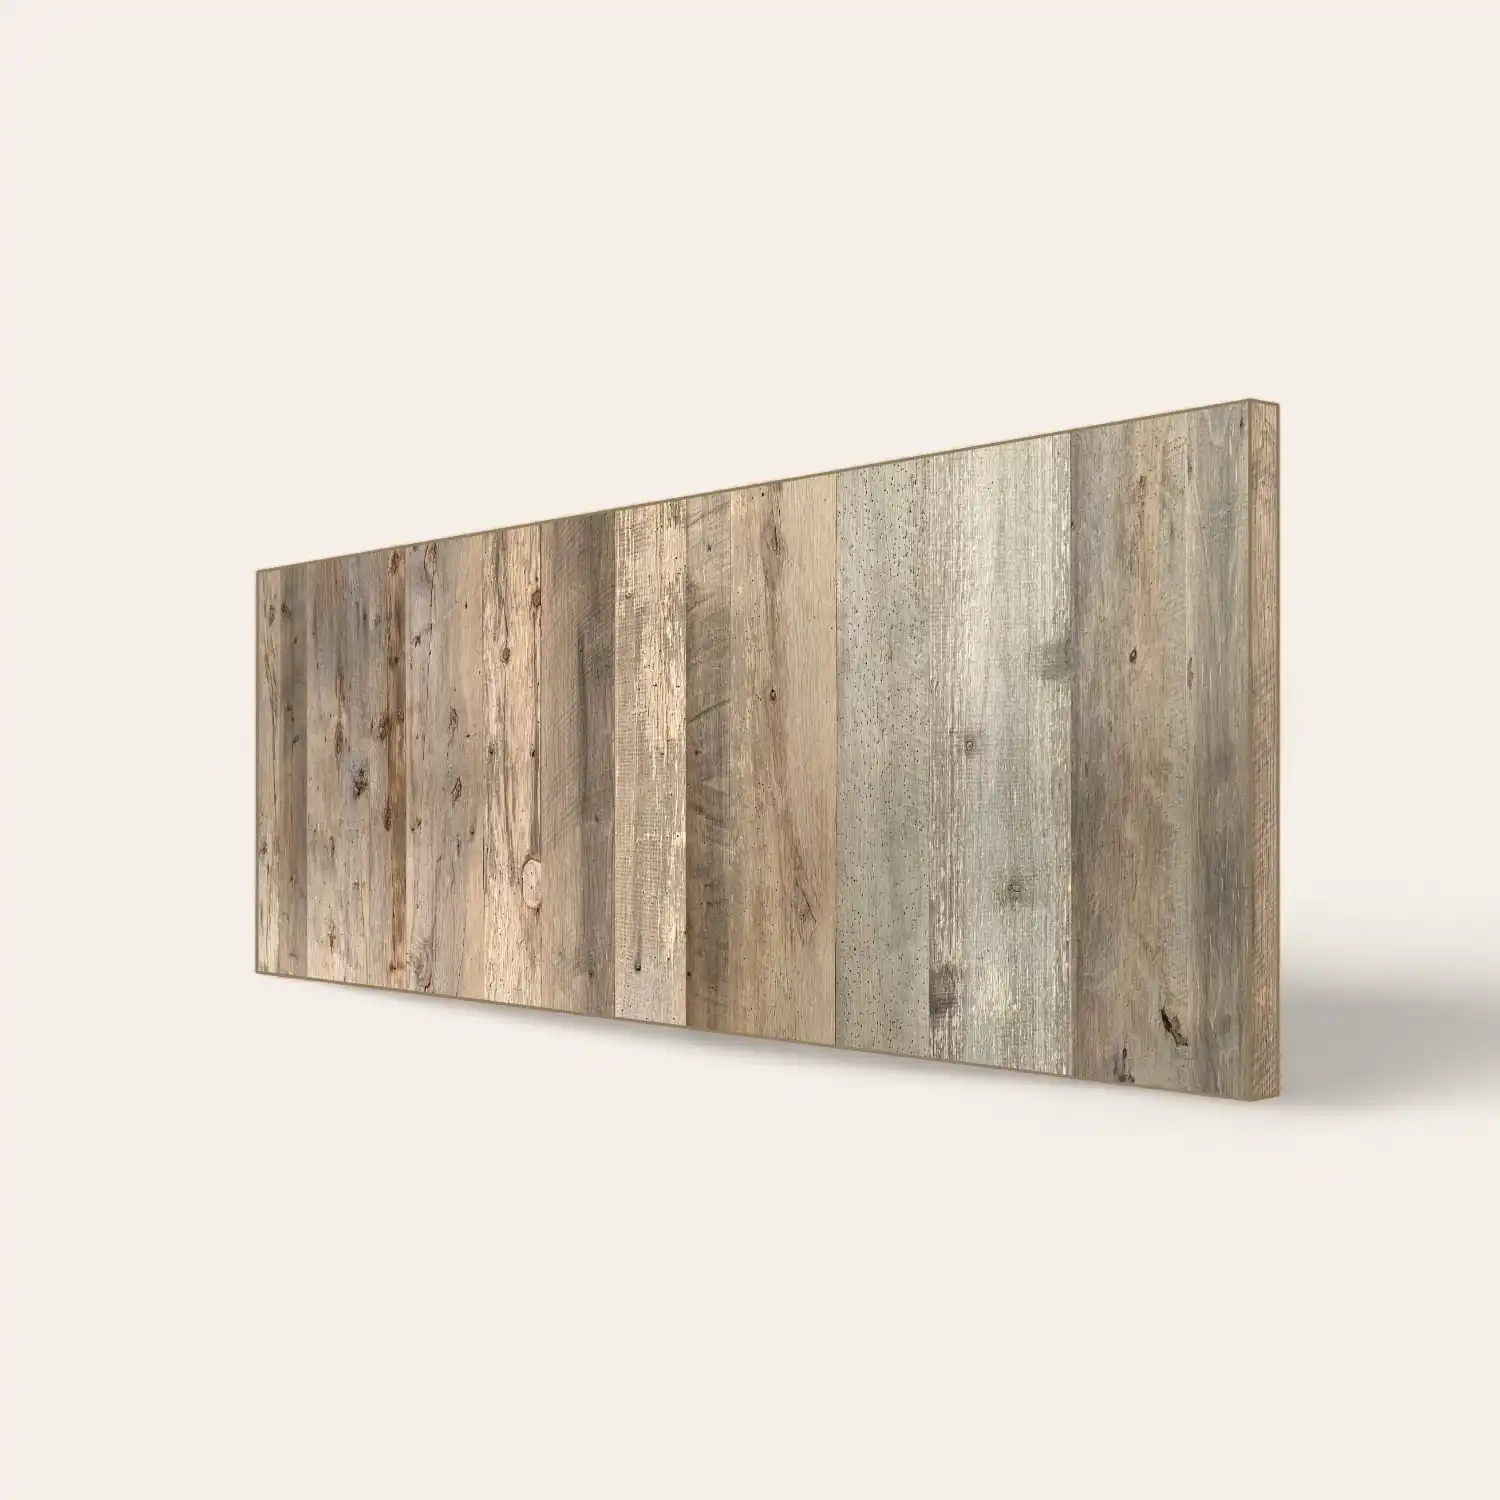  Un panneau de bois horizontal avec une texture patinée. 